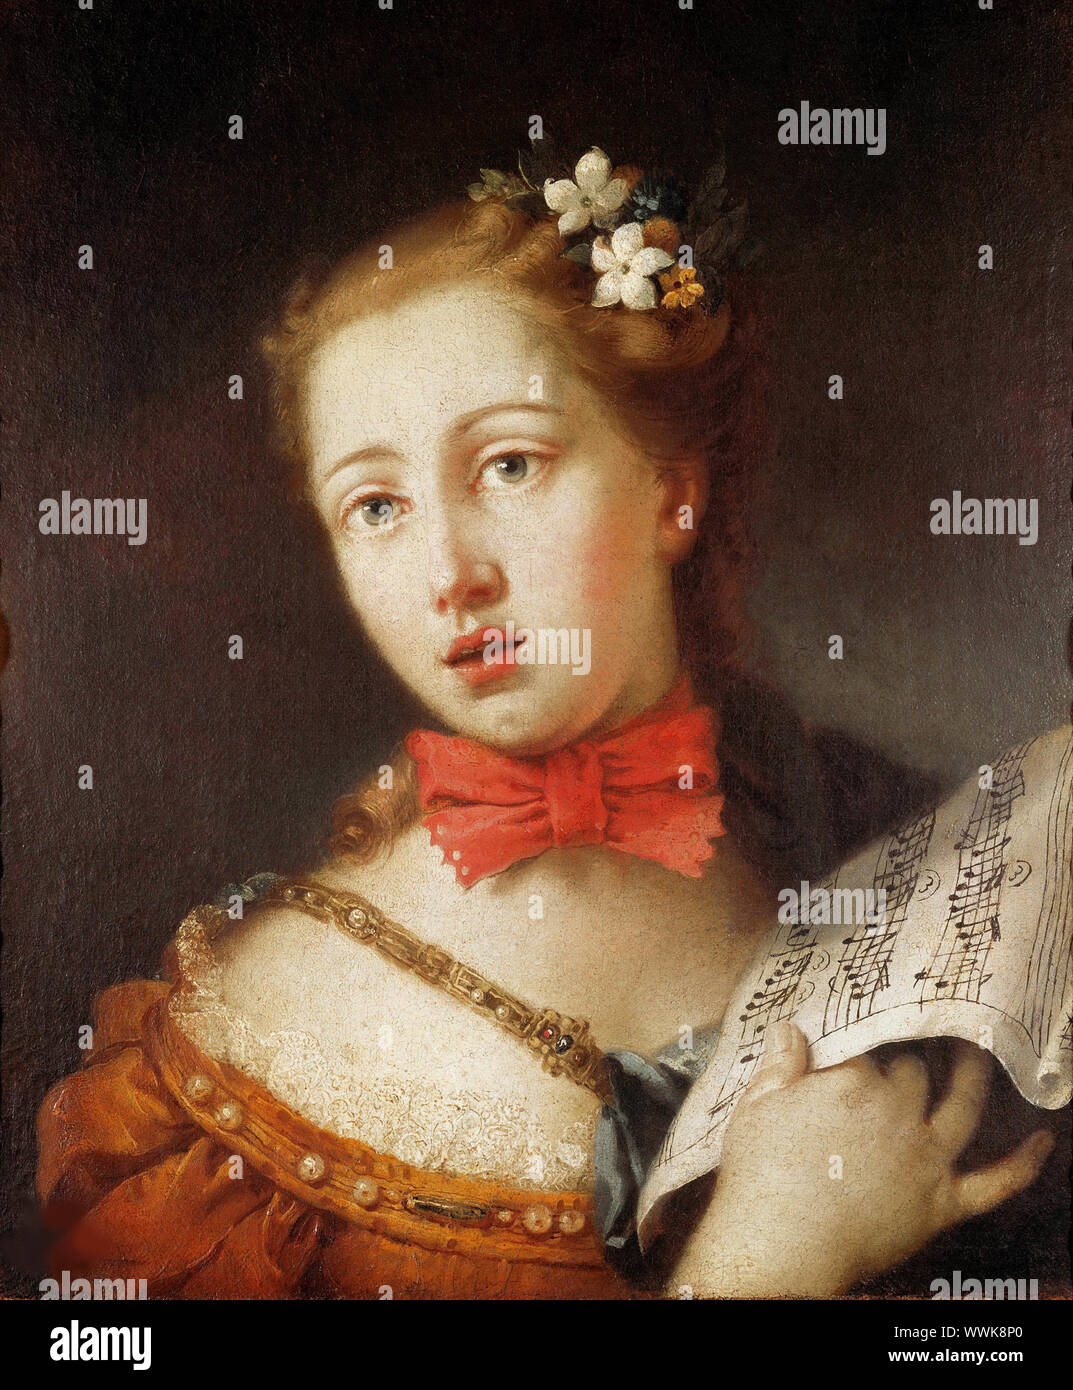 Portrait d'un jeune chanteur, 18e siècle. On trouve dans la collection de Pinacoteca di Brera, Milan. Banque D'Images